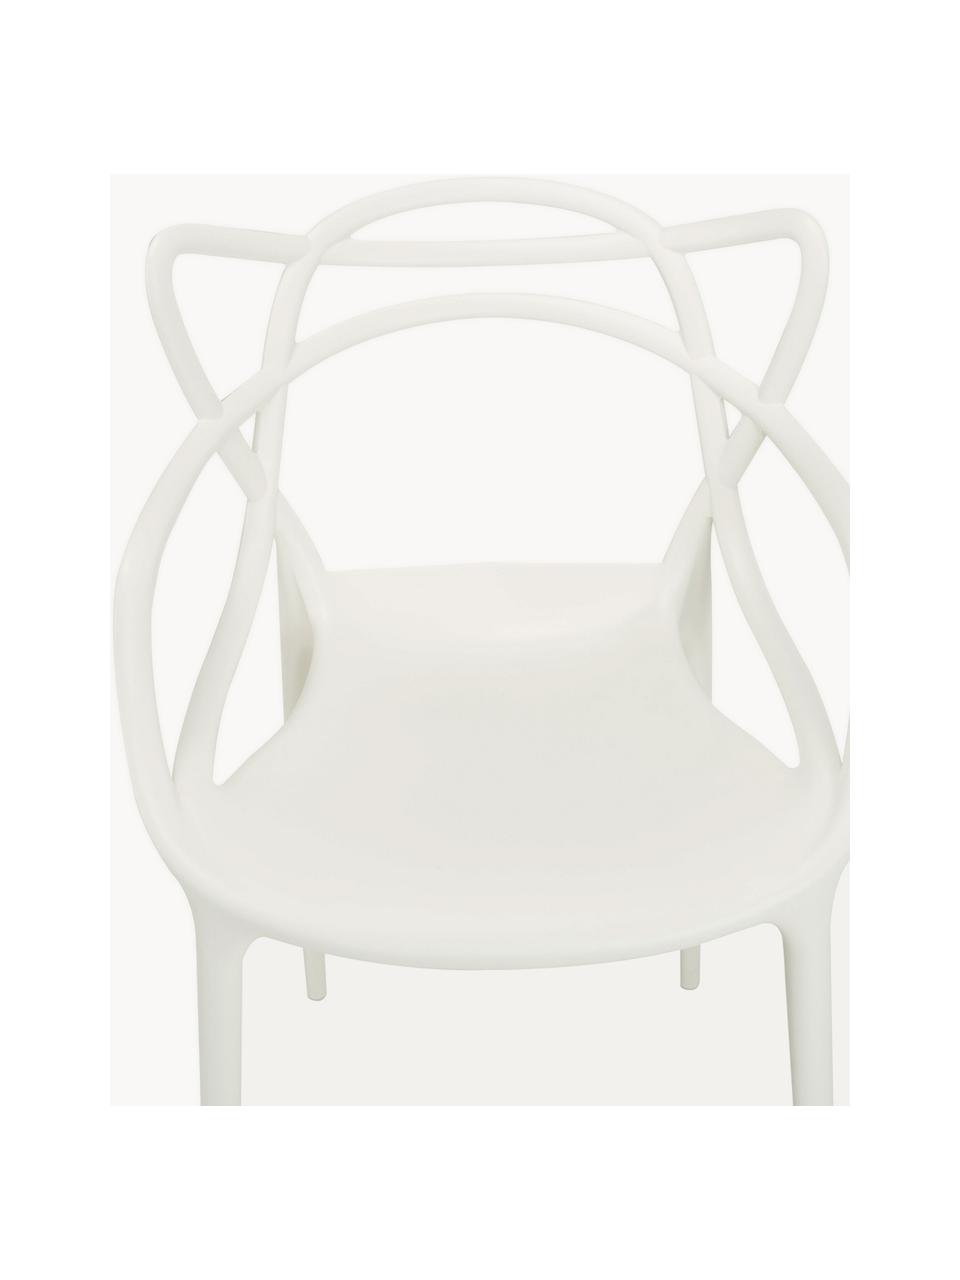 Krzesło z podłokietnikami Masters, 2 szt., Tworzywo sztuczne, Biały, S 57 x G 47 cm